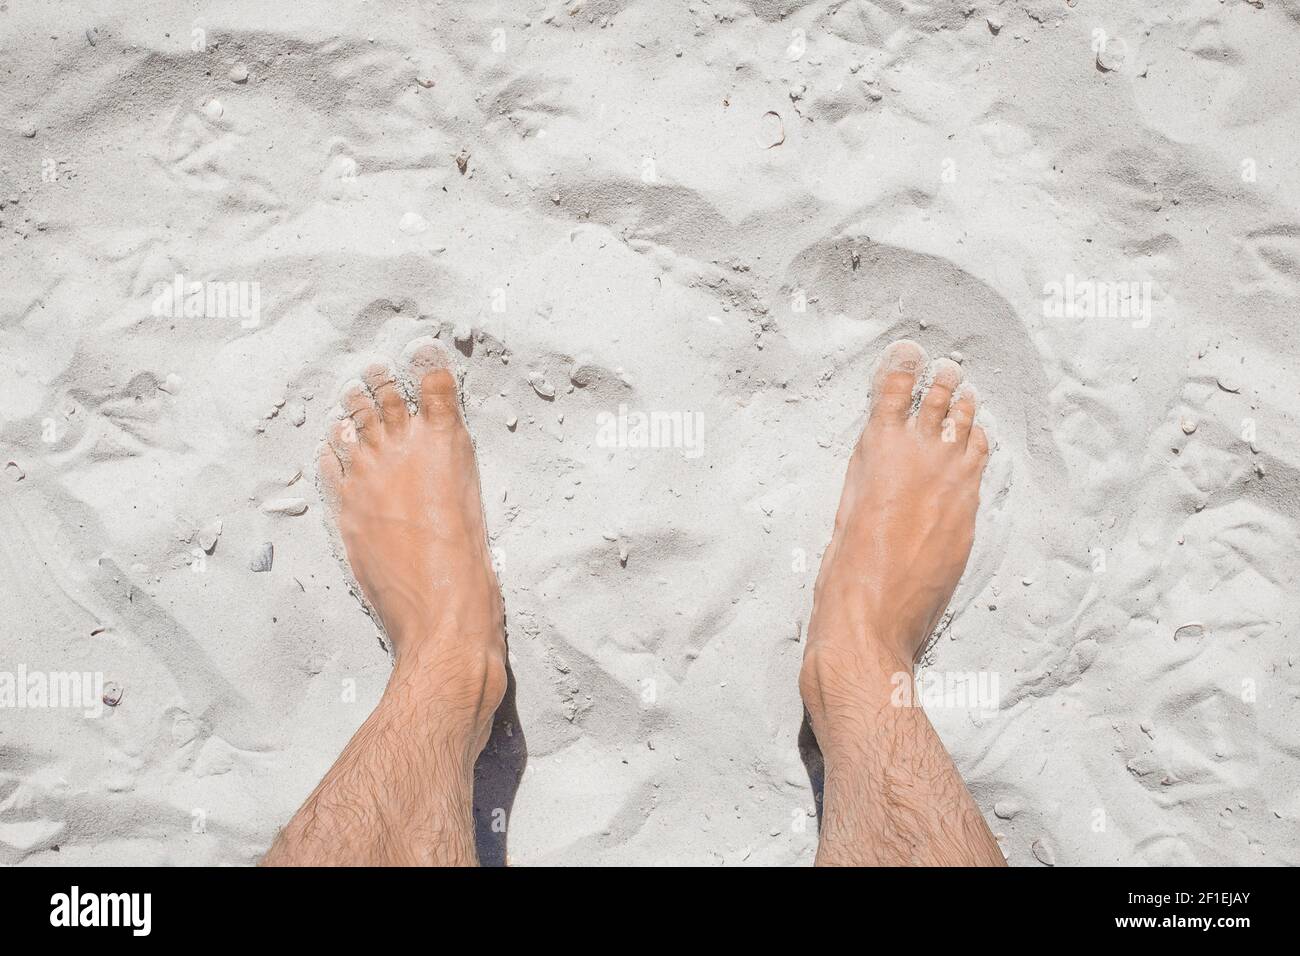 Die Beine des jungen Mannes stehen entspannt auf dem weißen Strandsand, der Blick von oben. Stockfoto